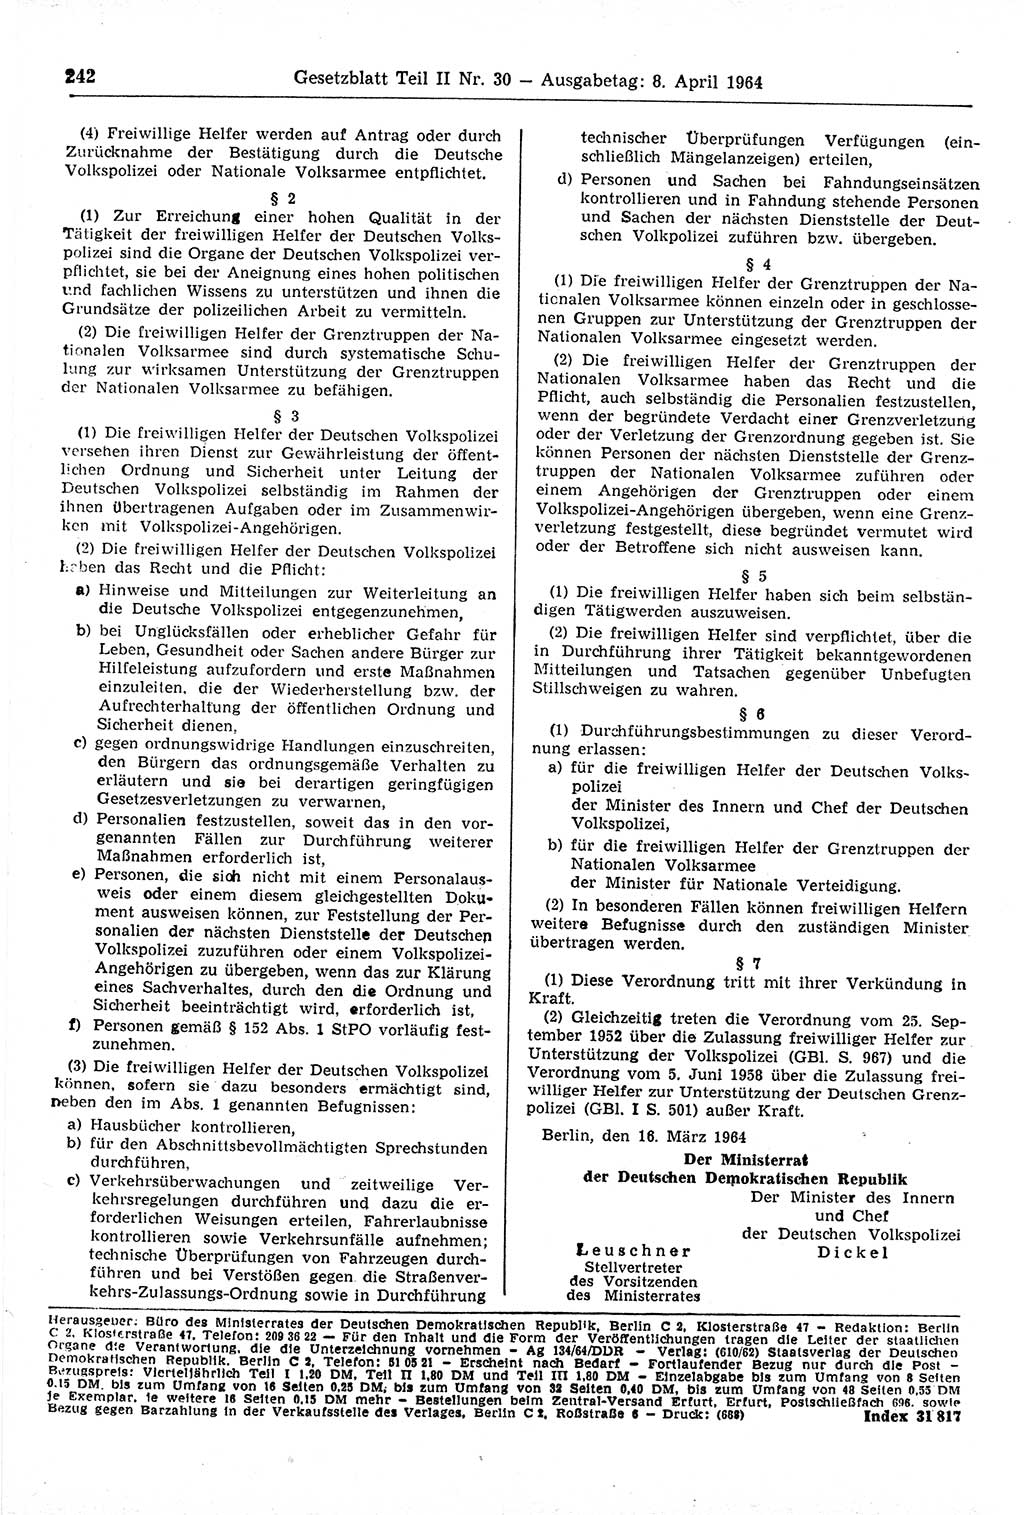 Gesetzblatt (GBl.) der Deutschen Demokratischen Republik (DDR) Teil ⅠⅠ 1964, Seite 242 (GBl. DDR ⅠⅠ 1964, S. 242)